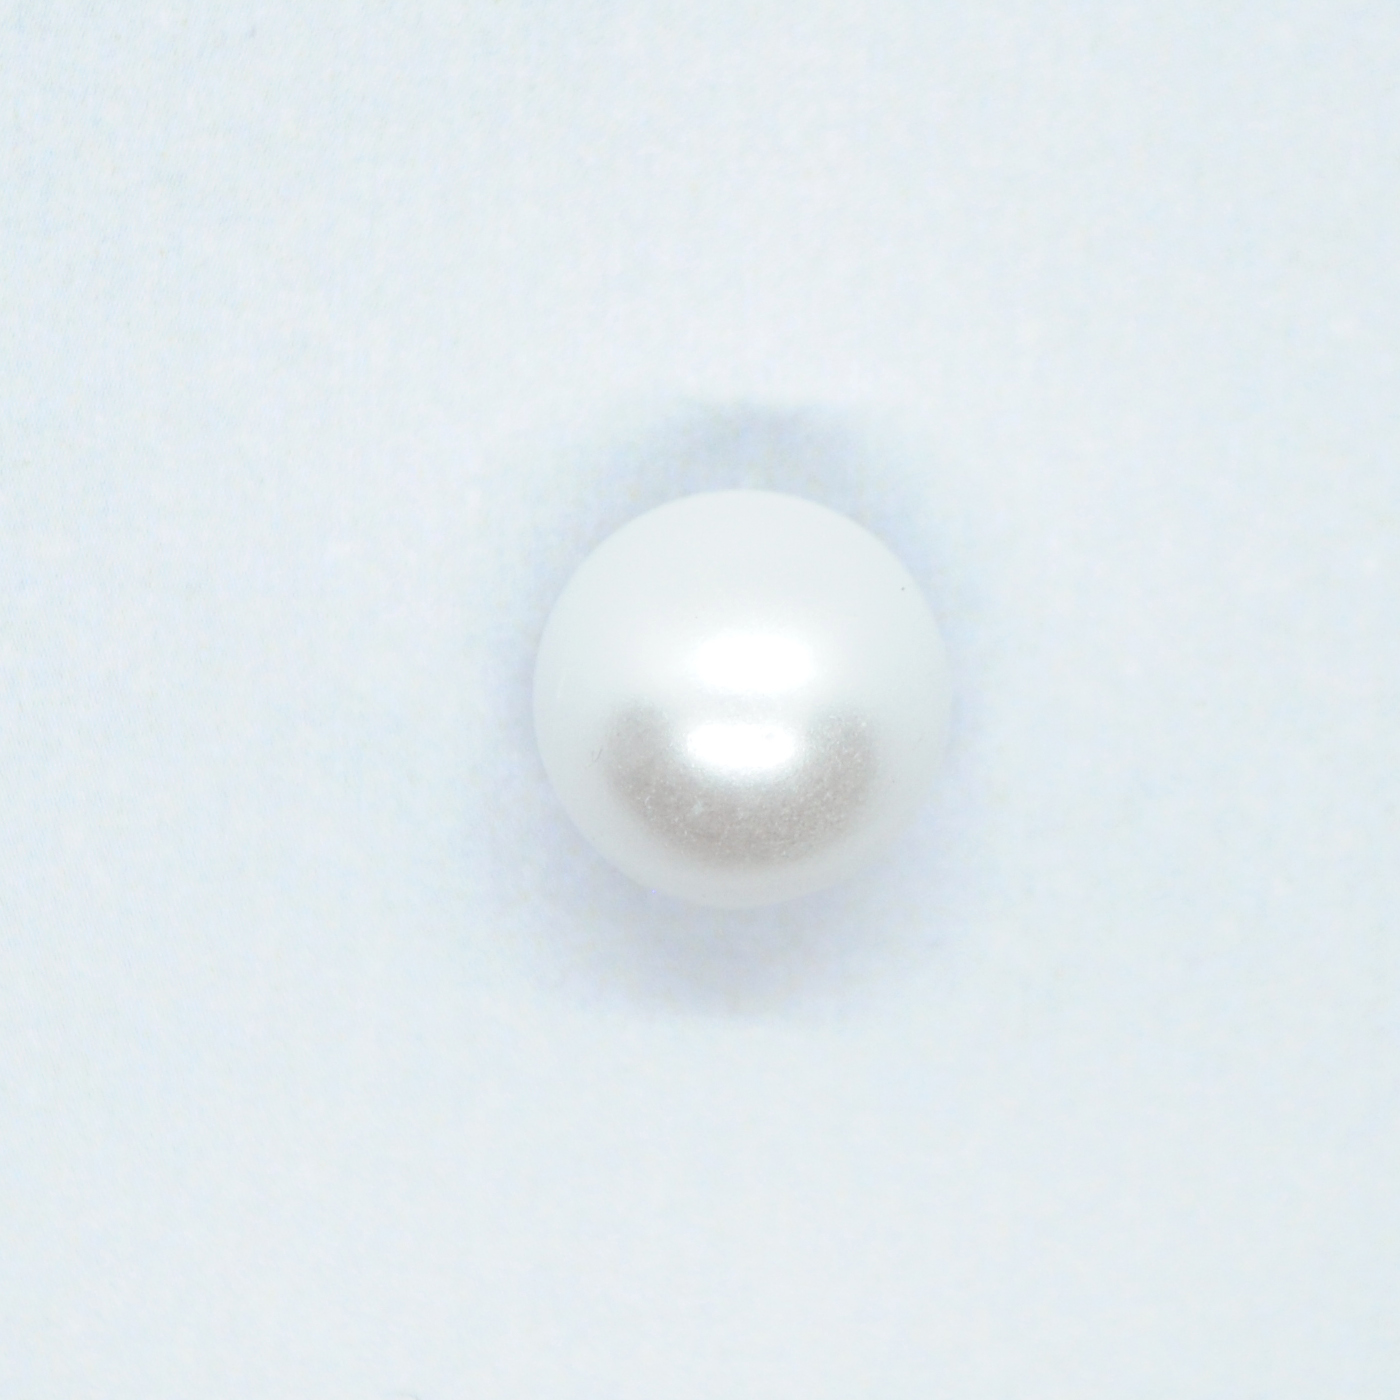 Hvit perle m/kanal 15mm